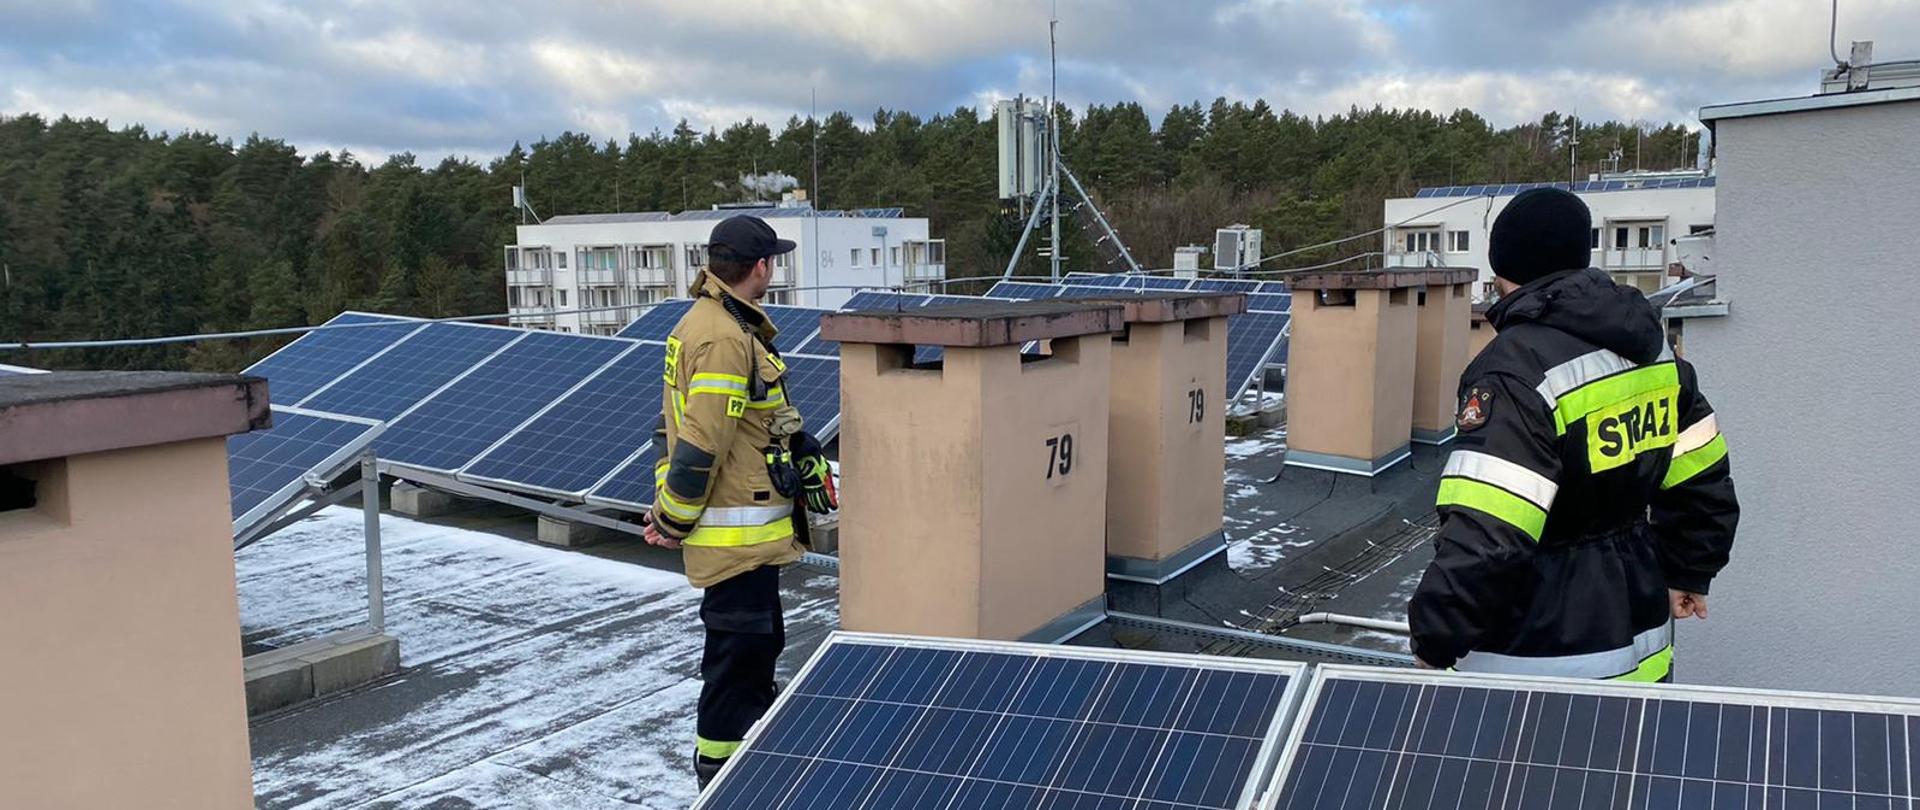 Dwóch strażaków sprawdza na dachu budynku wysokiego instalacje fotowiltaiczne zamontowane w kilku szeregach